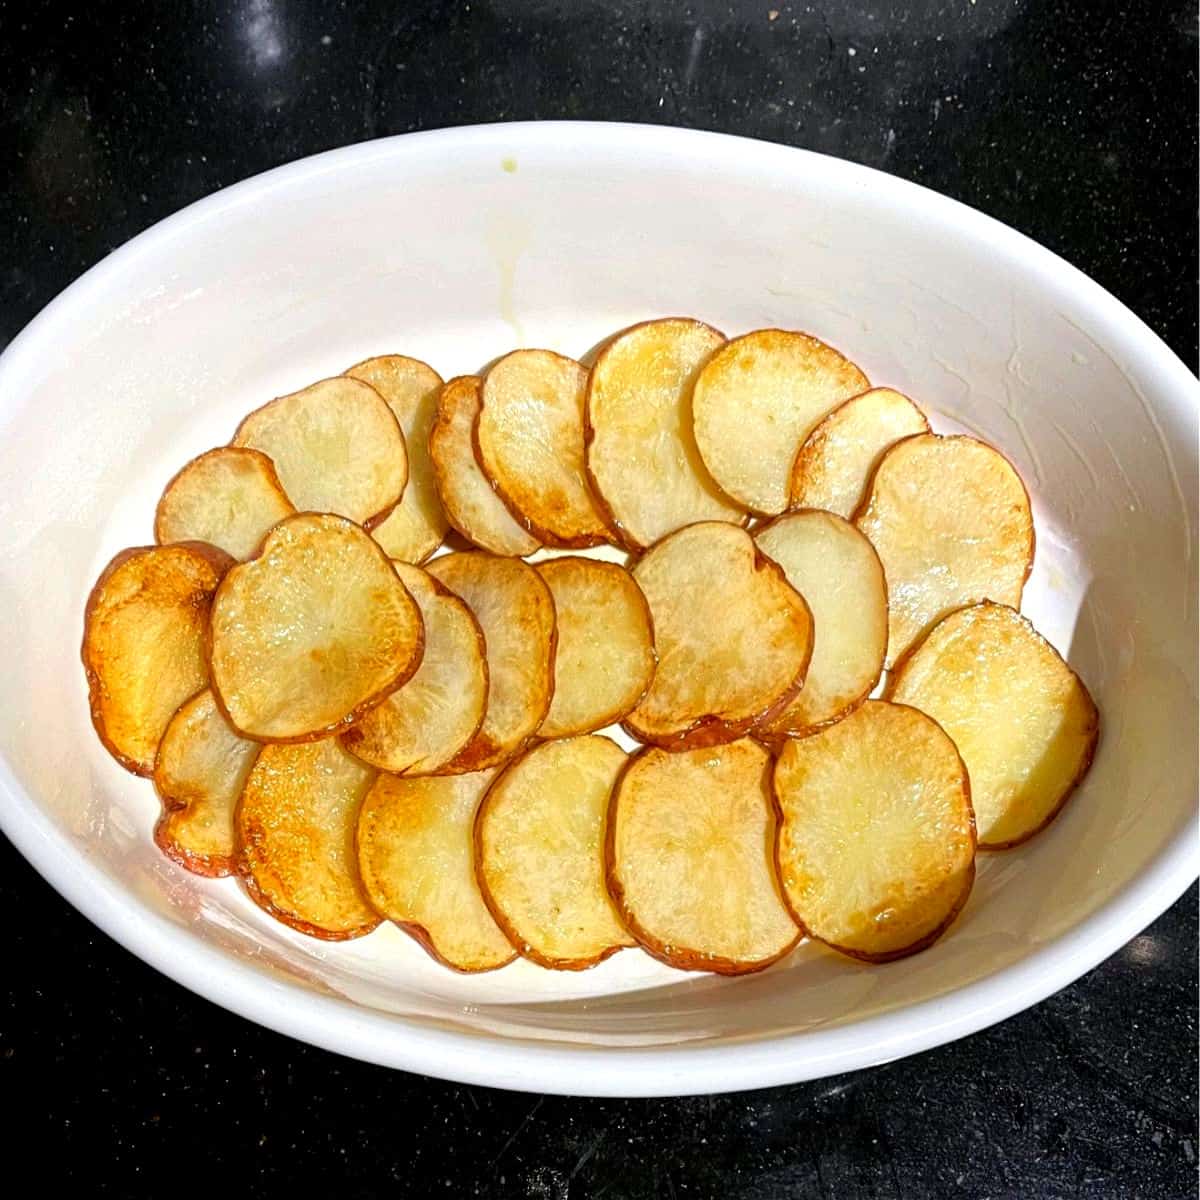 Potato layered in baking dish for vegan moussaka.